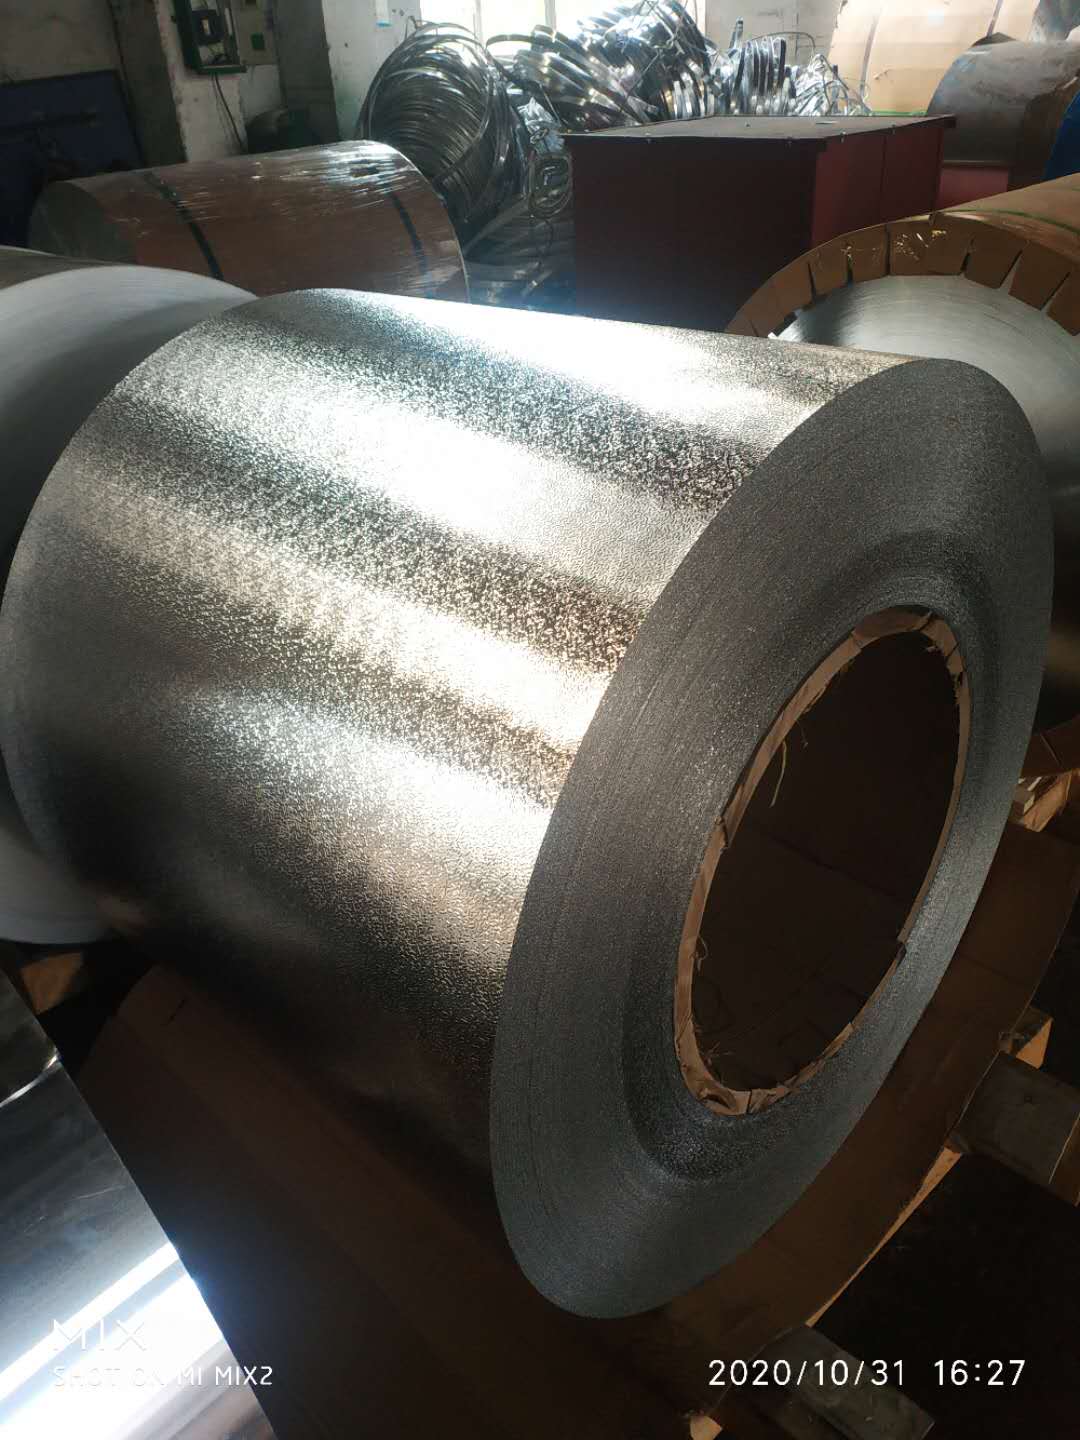 單零鋁箔容器鋁箔空調鋁箔